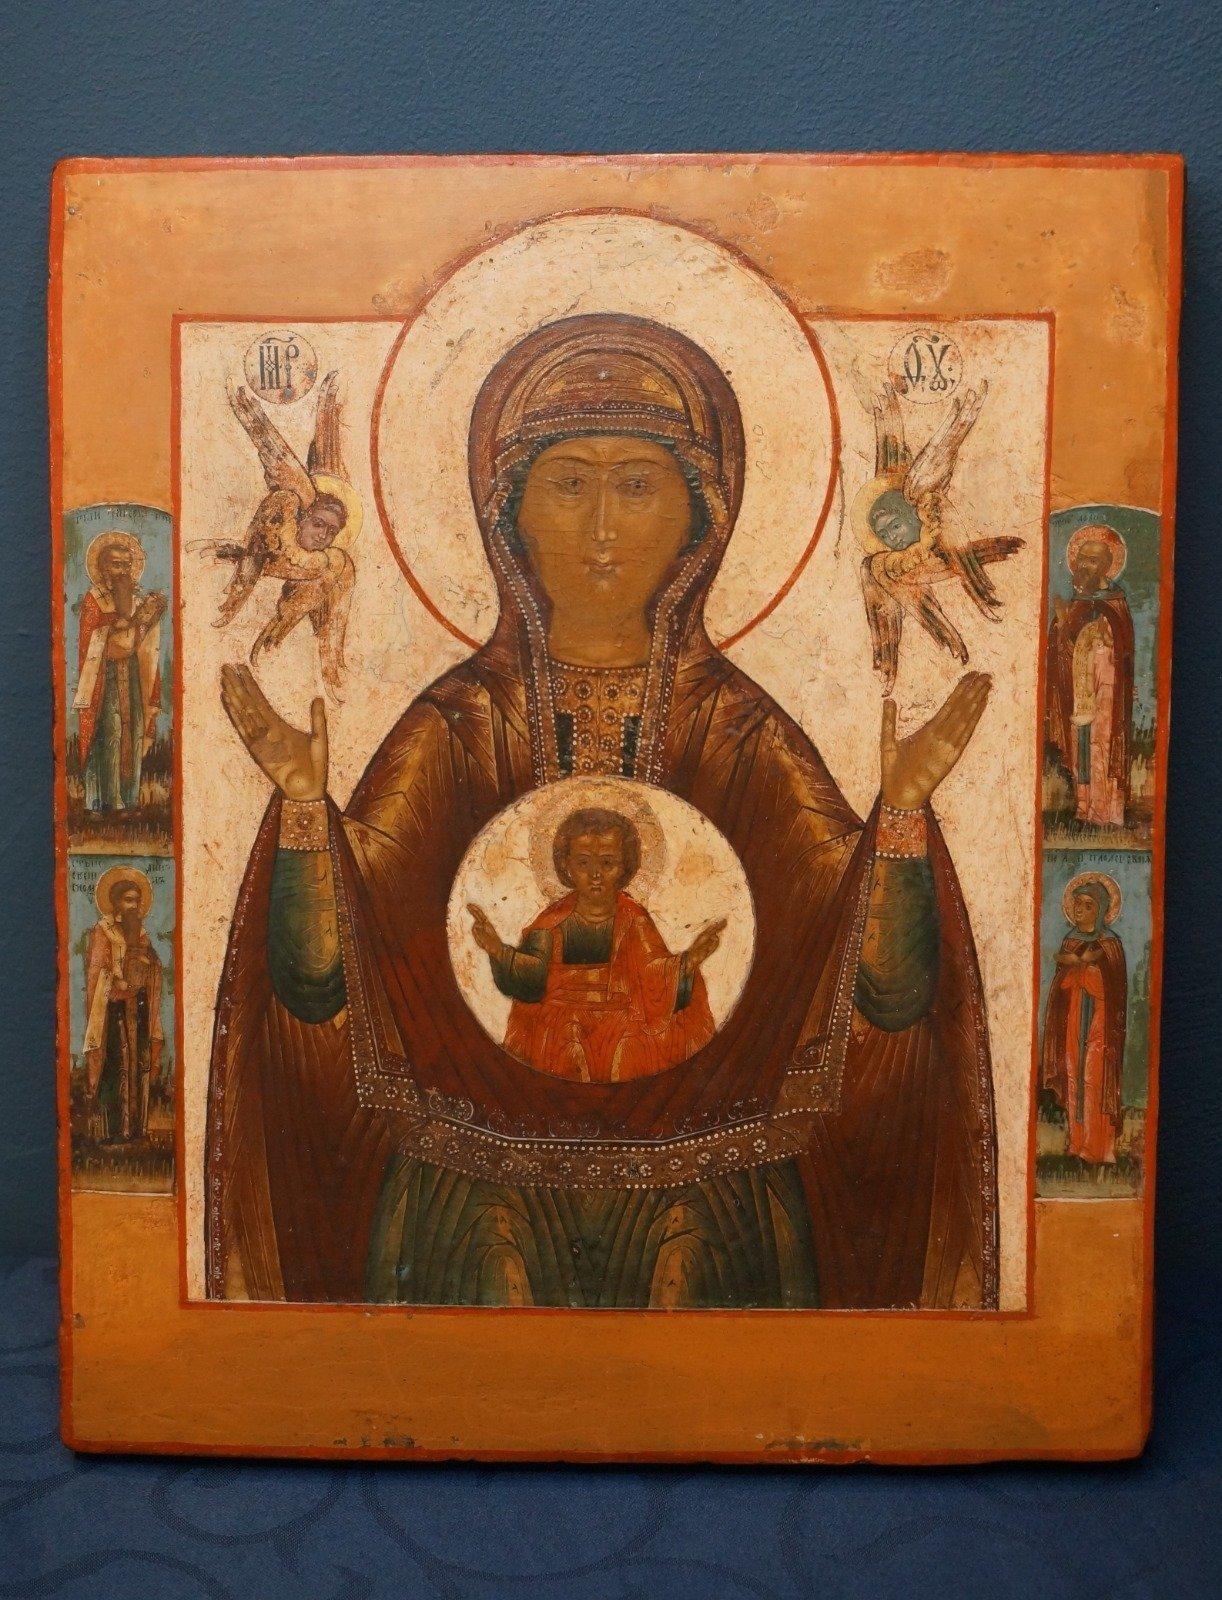 Meditative mittelrussische Ikone, die die Mutter Gottes des Zeichens darstellt und auch als Znamenje von Novogrod bezeichnet wird. Typisch für diese jahrhundertealte Ikonographie ist, dass die Mutter Gottes frontal zum Betrachter blickt und ihre